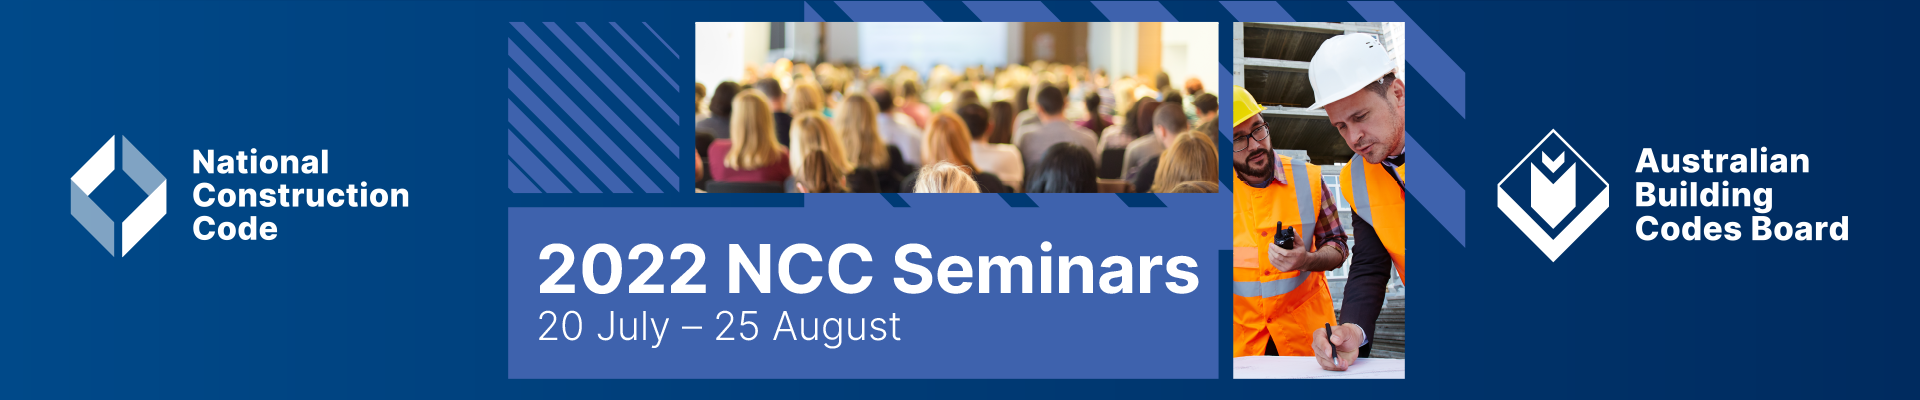 2022 NCC Seminars